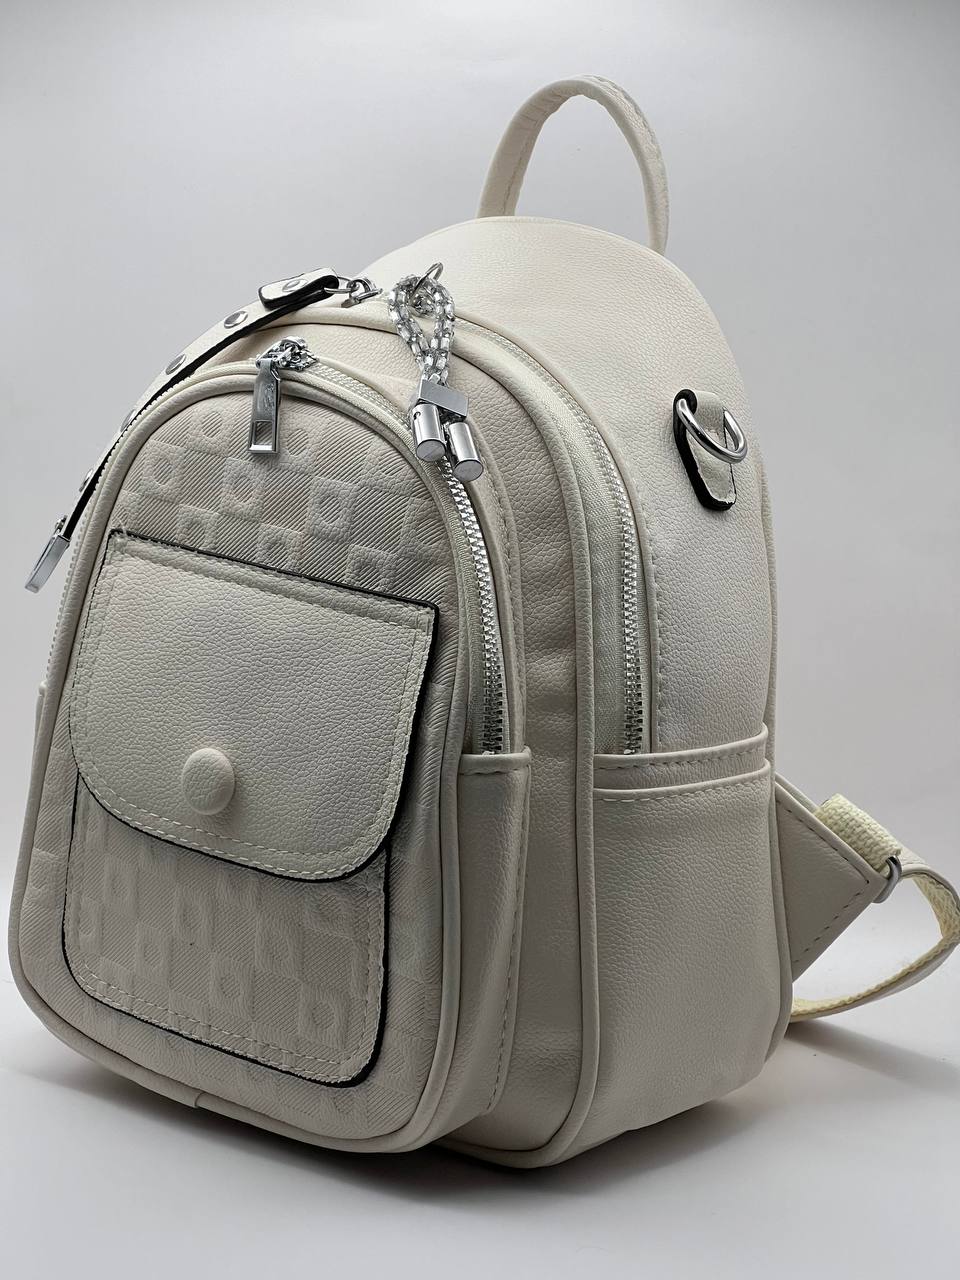 Сумка-рюкзак женская SunGold Р-92006 молочная, 27х22х12 см